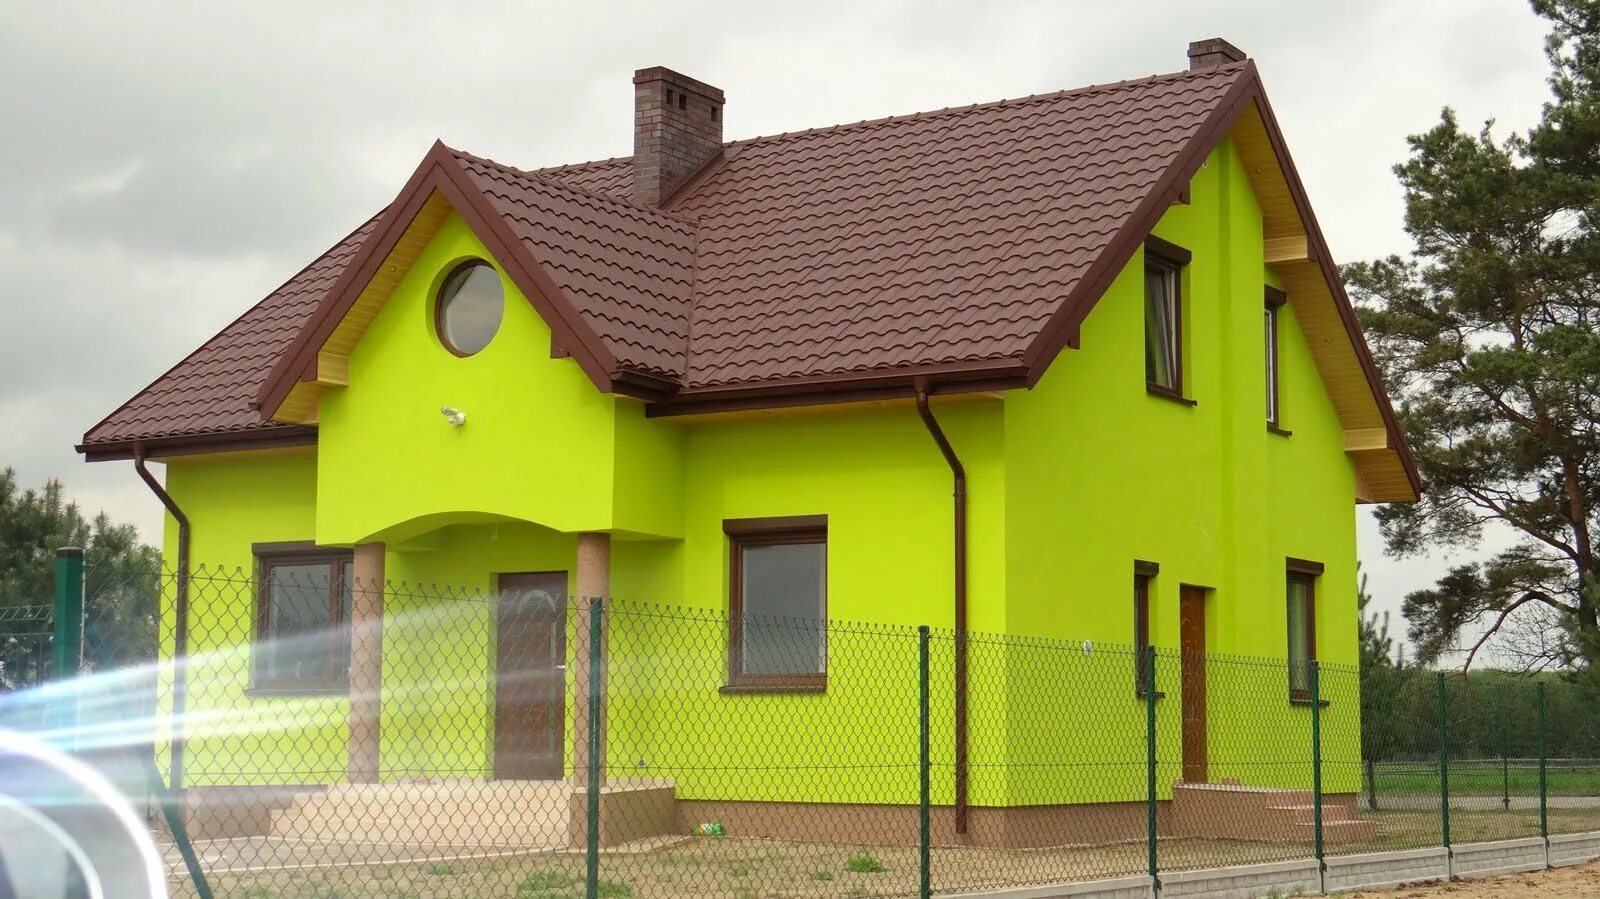 RAL 8017 металлочерепица. Дом с желтым фасадом. Яркие фасады домов. Желтый дом с зеленой крышей. Покрасить дом в зеленый цвет